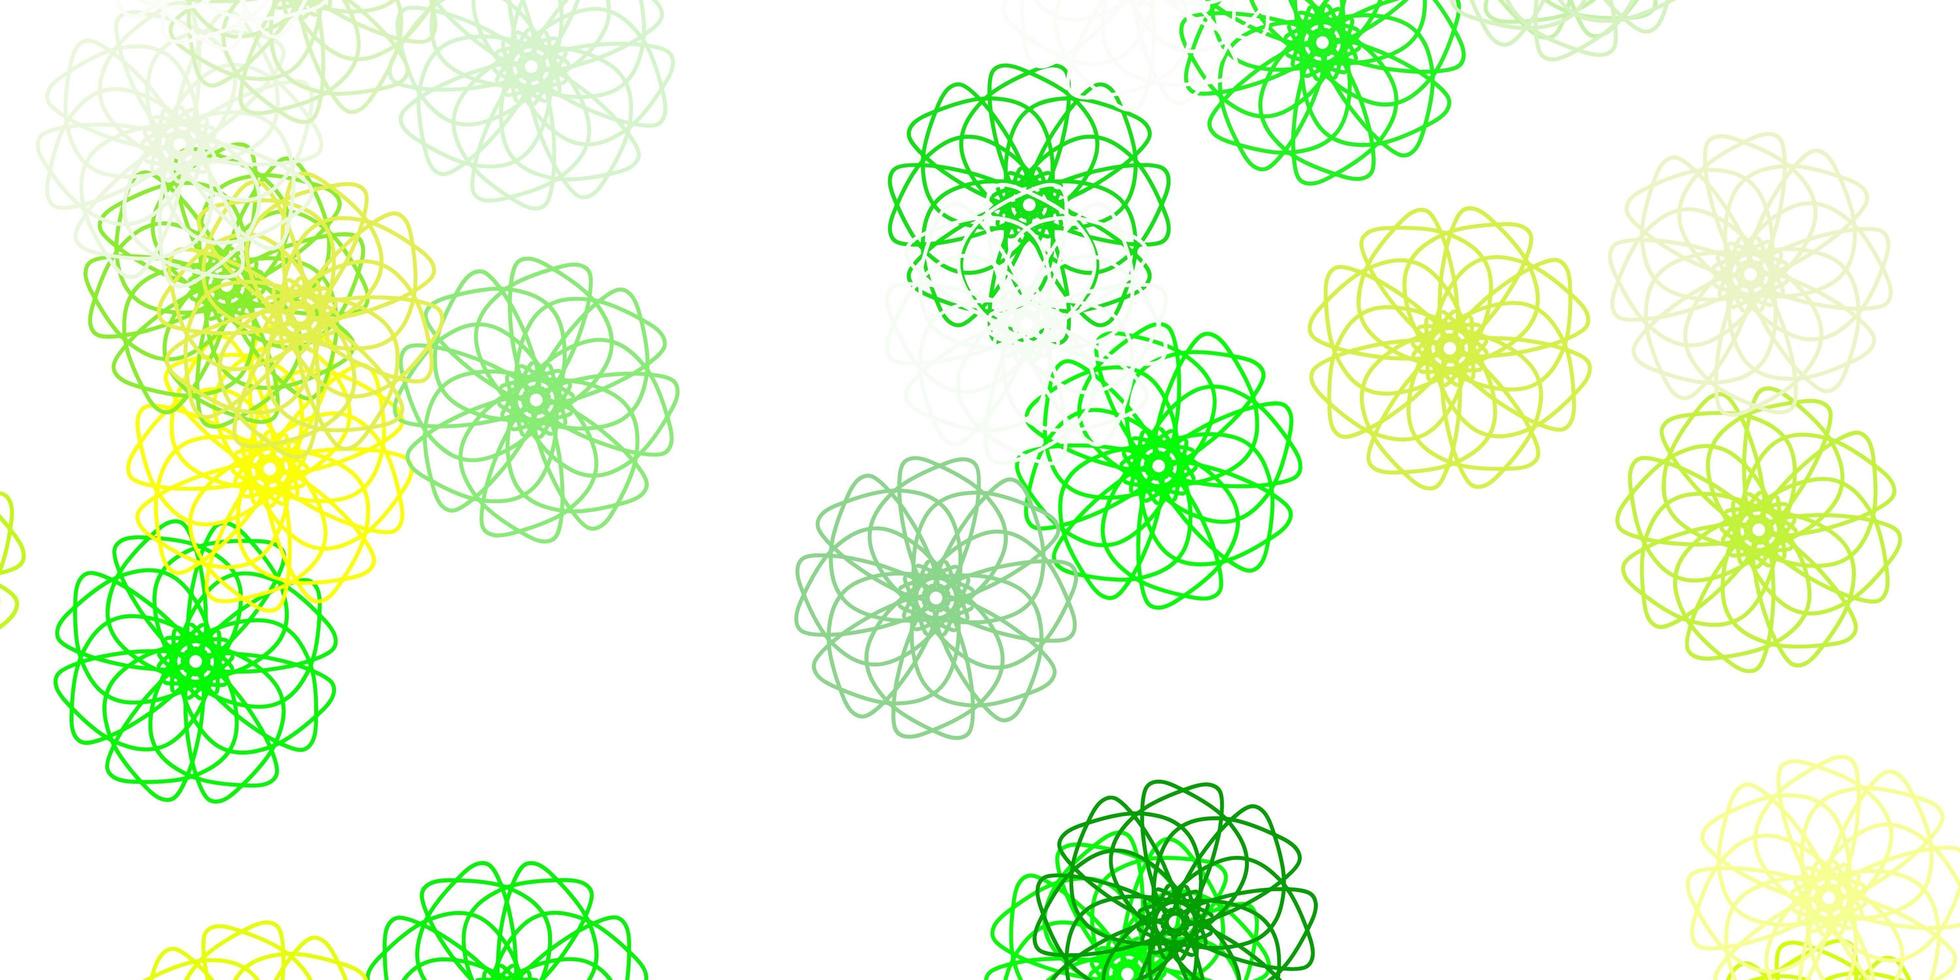 hellgrün-gelbe Vektor-Doodle-Vorlage mit Blumen vektor